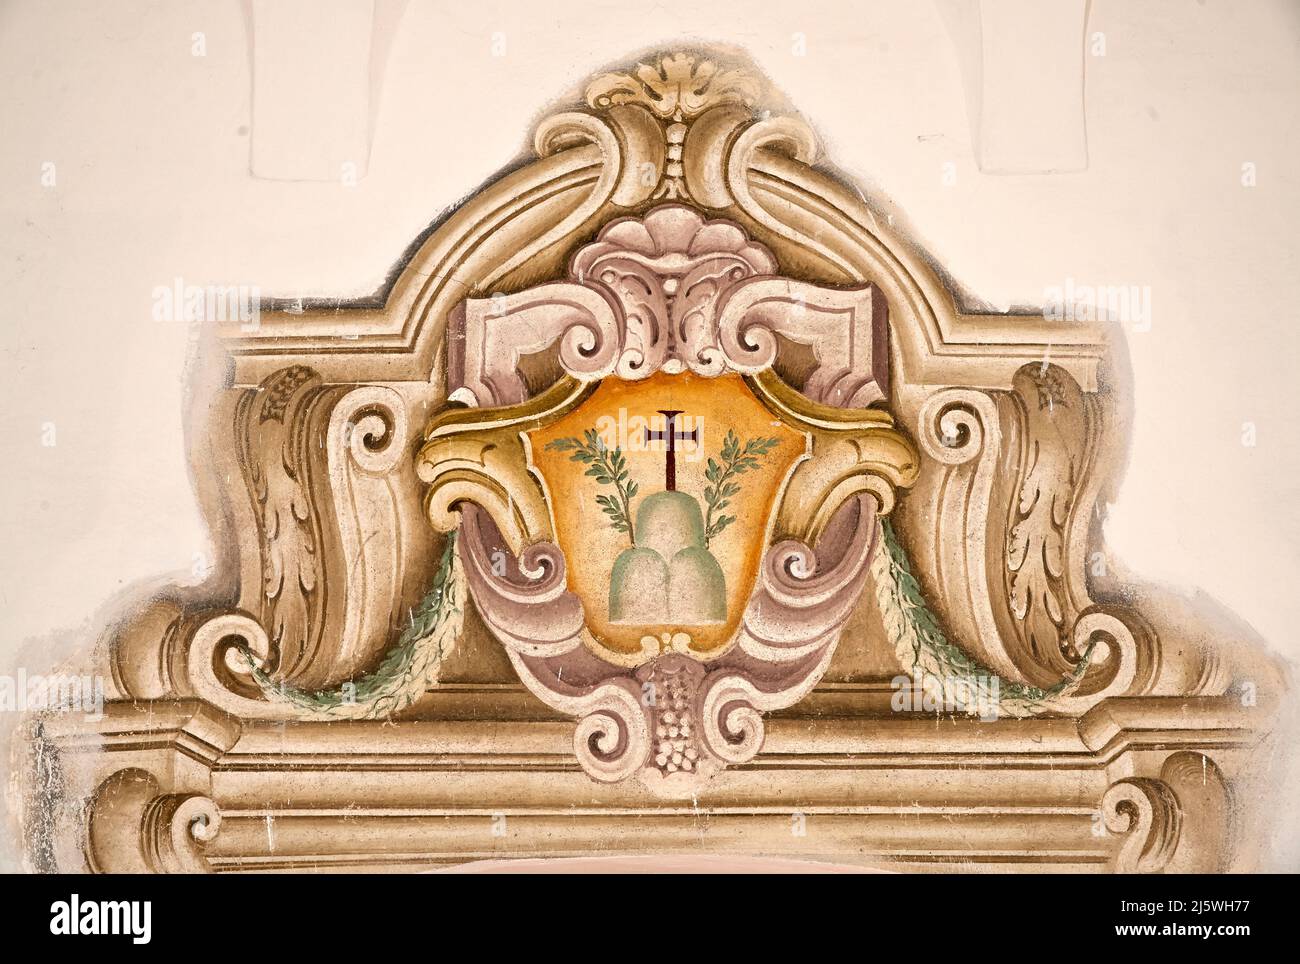 Il simbolo dell’Ordine degli Olivetani - decorazione ad affresco di una porta del Convento  - XVII secolo - Rodengo (Bs), Italia,Abbazia Olivetana Stock Photo